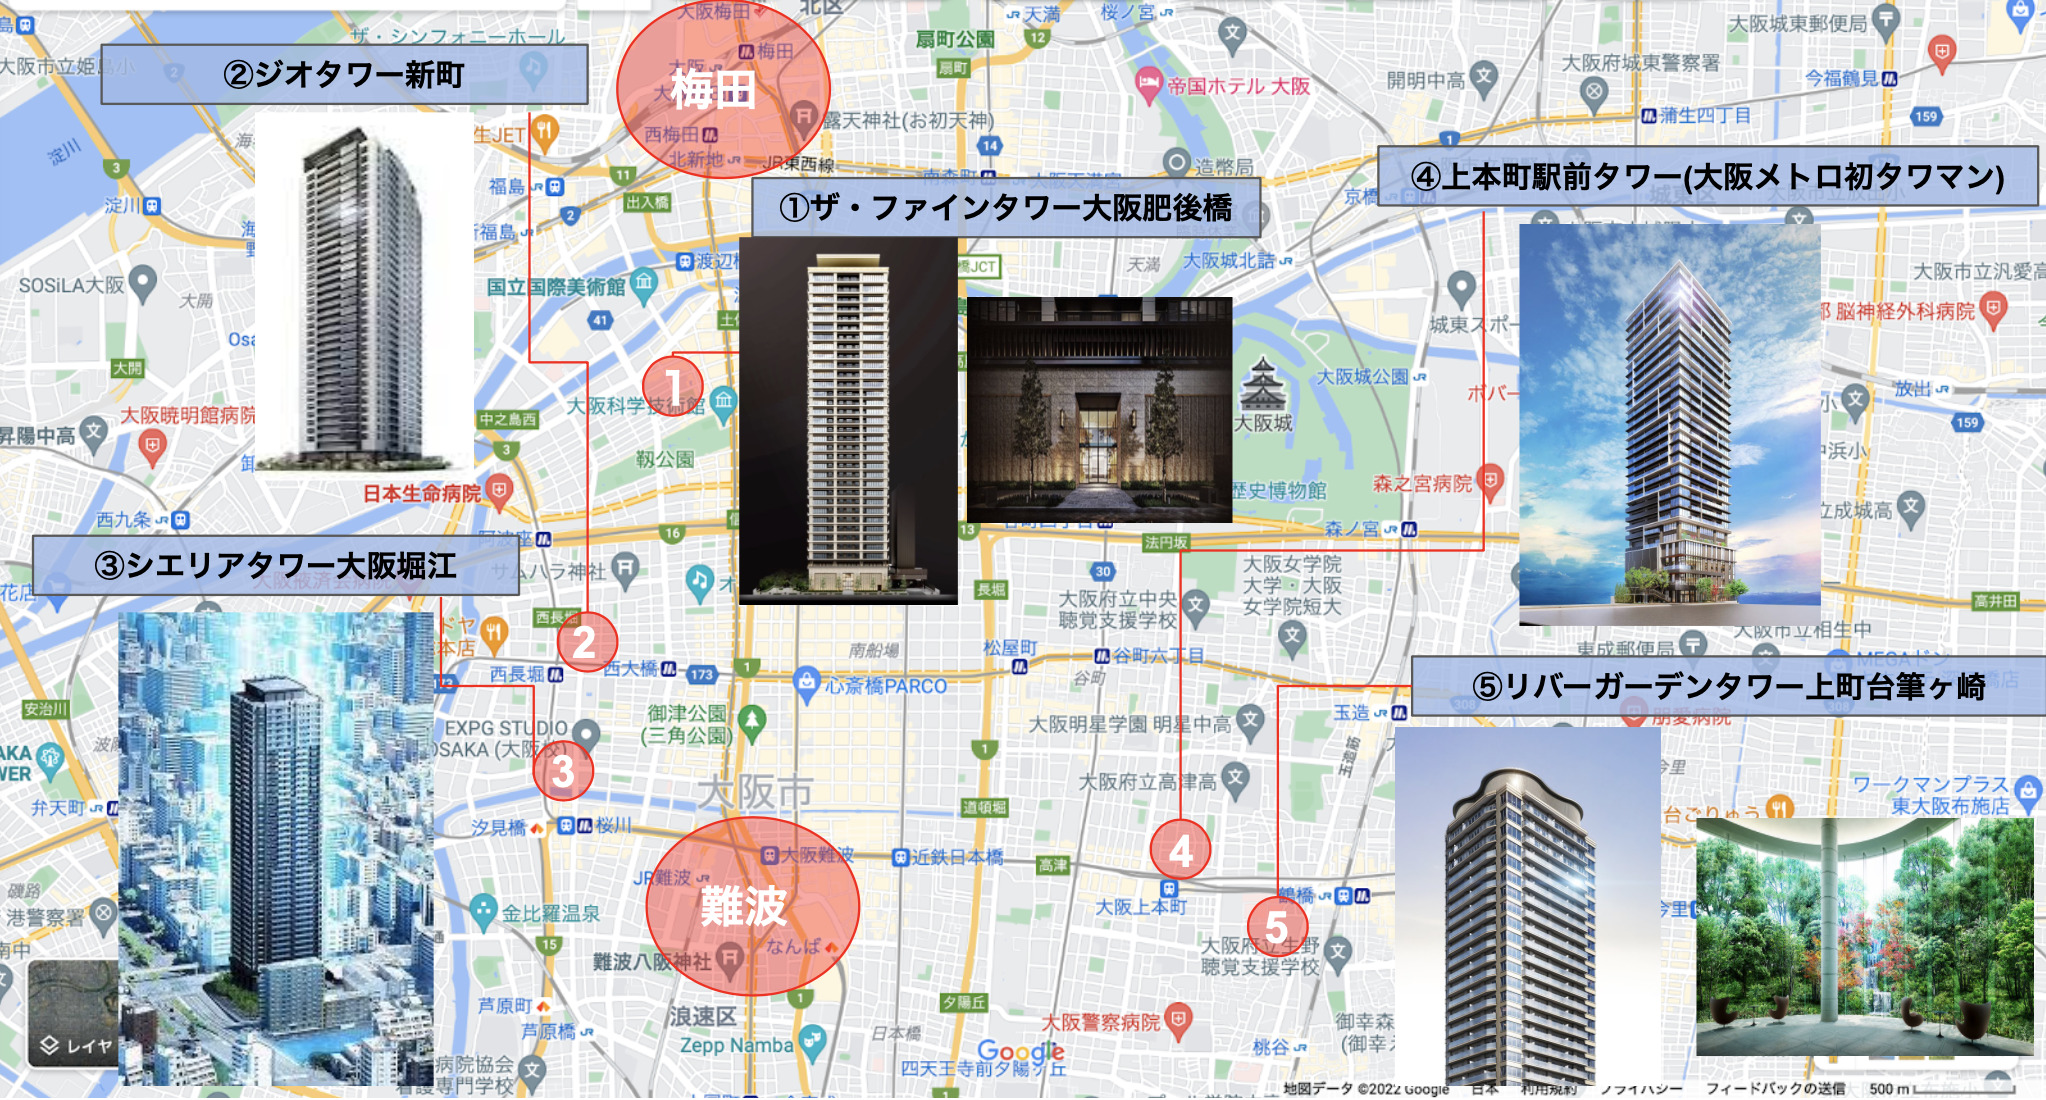 【大阪】2022年販売開始になる気になるマンションはこれだ！「関西マンションすごろく」